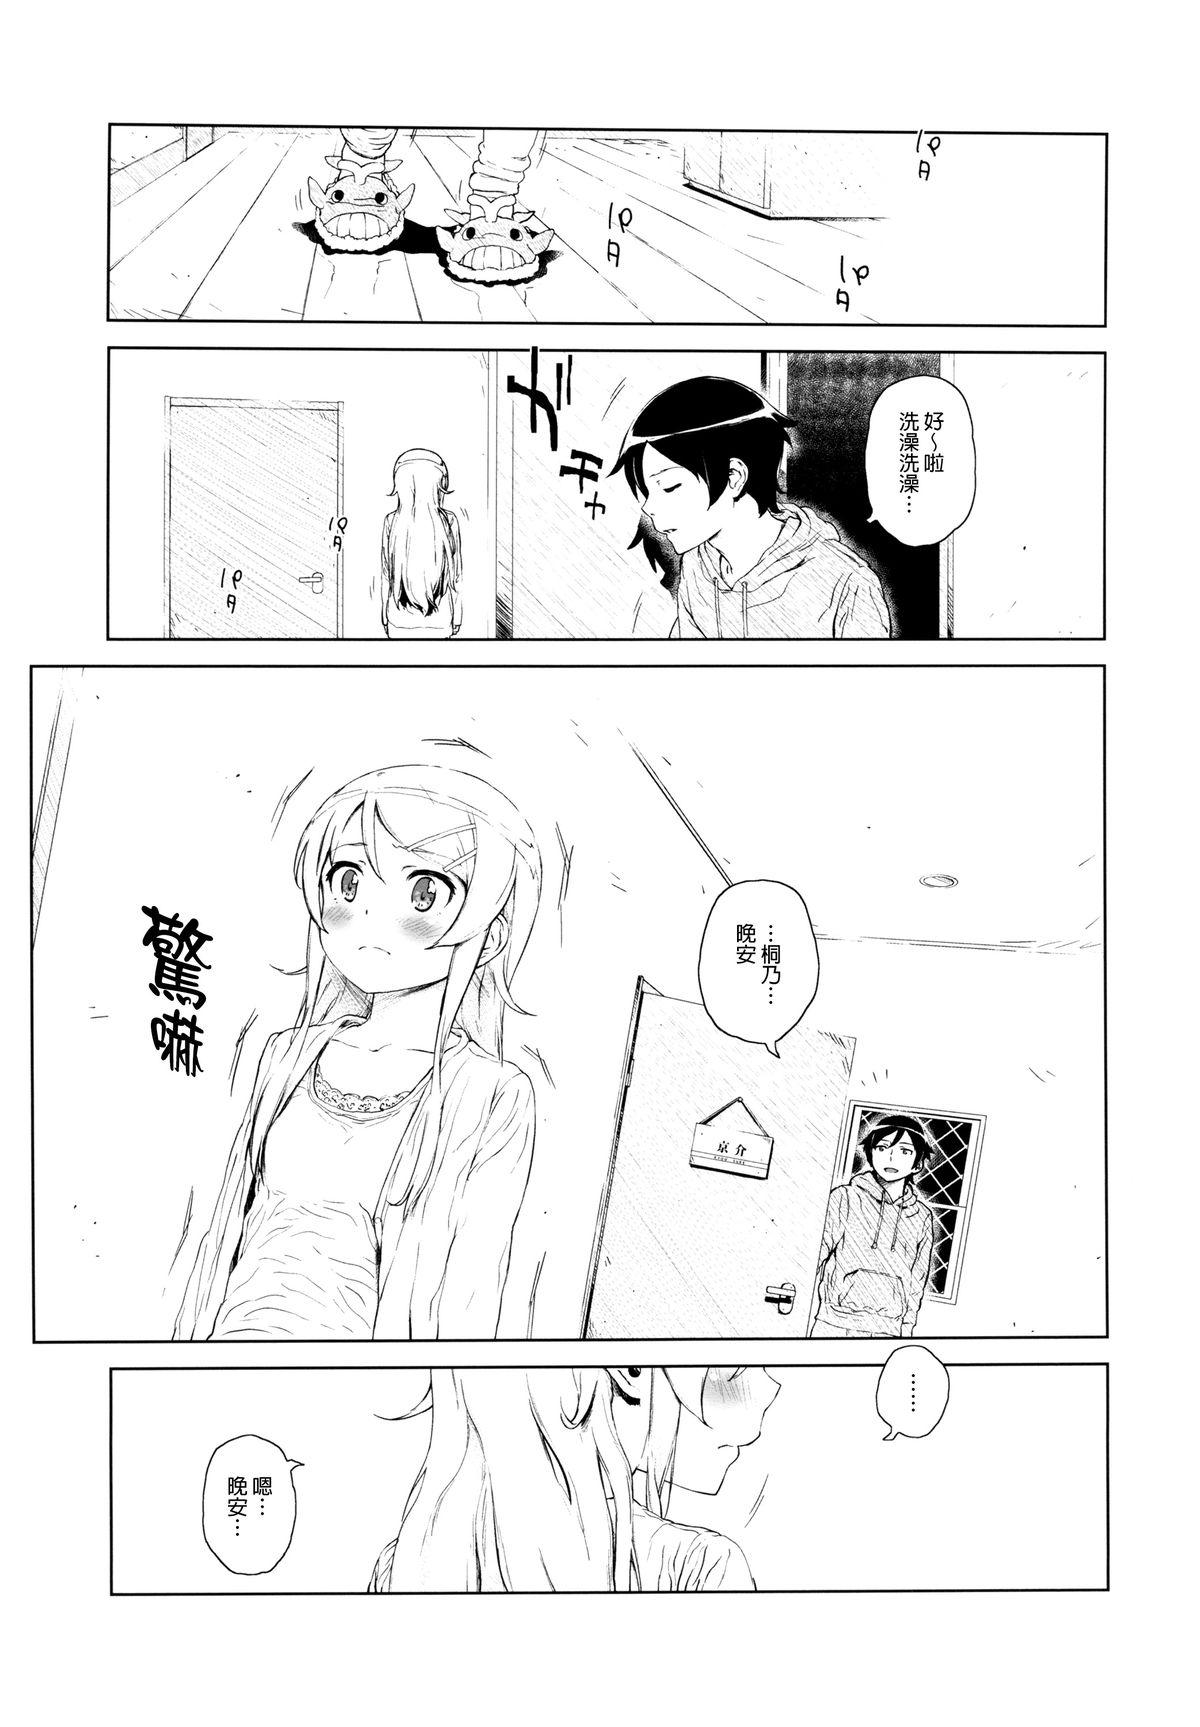 Porno Hoshikuzu Namida 2 - Ore no imouto ga konna ni kawaii wake ga nai Rope - Page 6